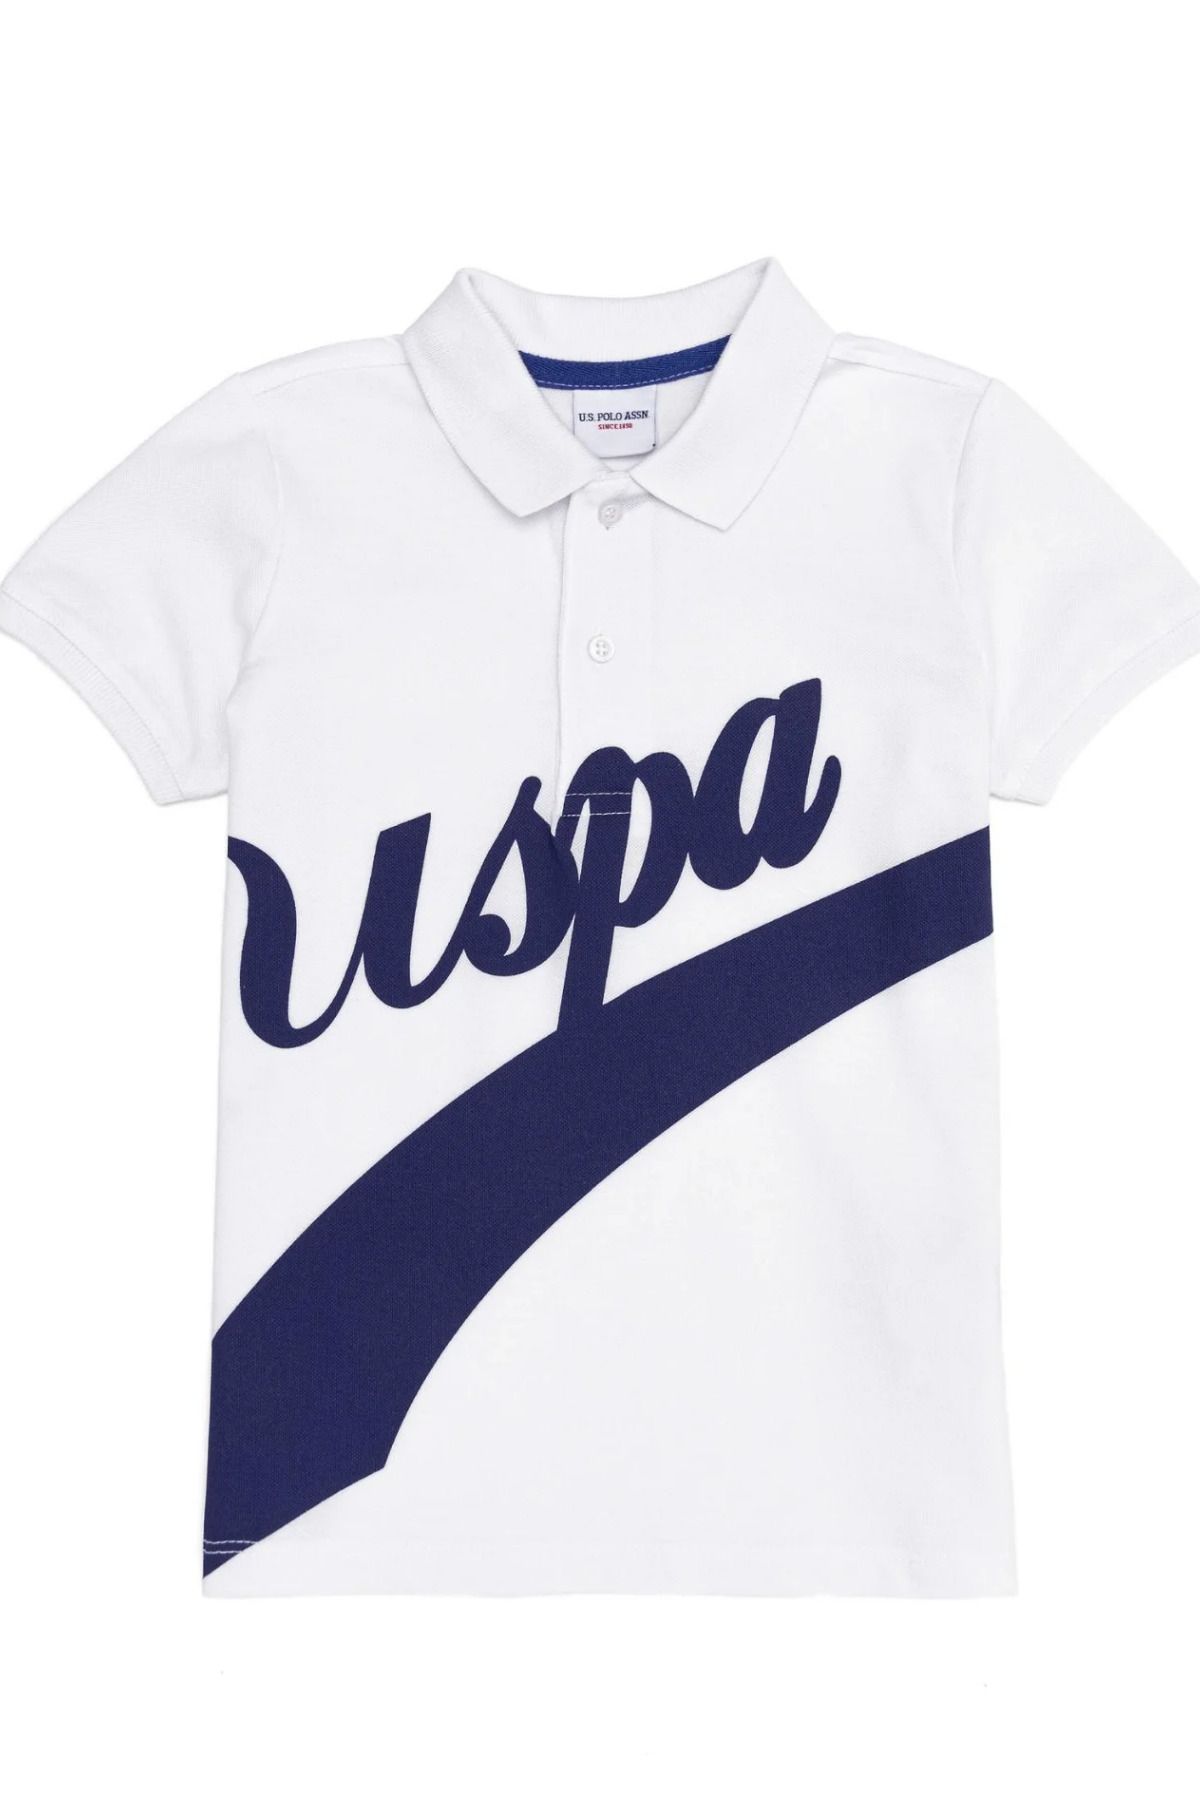 U.S. Polo Assn. Erkek Çocuk Beyaz Polo Yaka Tişört